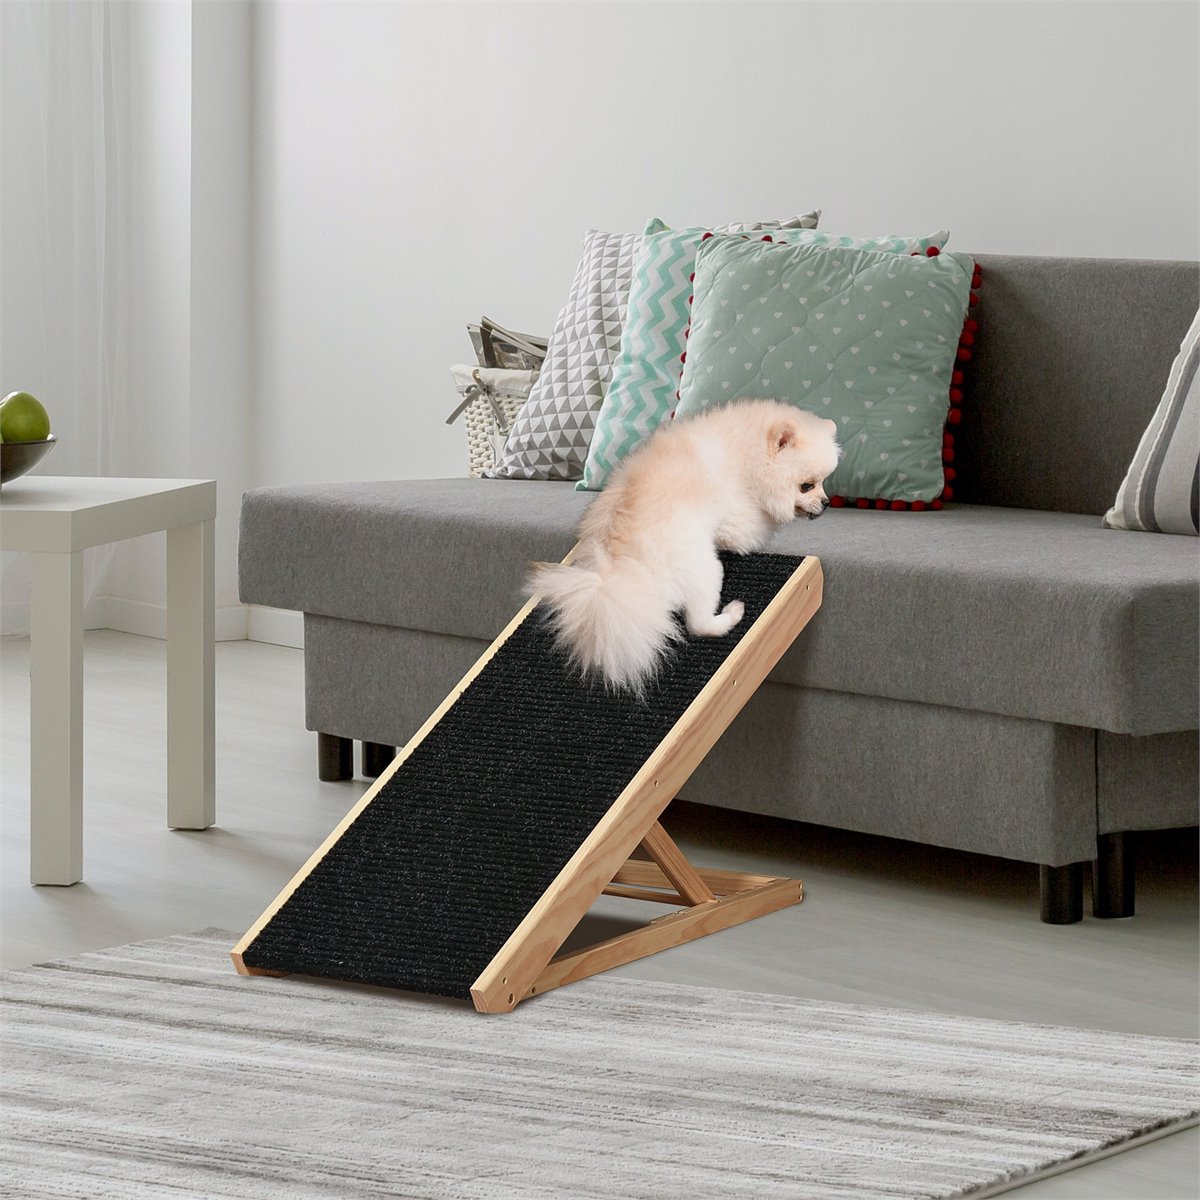 Rampa ajustable de madera para mascotas, rampa para perros con superficie  antideslizante de alfombra, 4 niveles de altura ajustable para mascotas